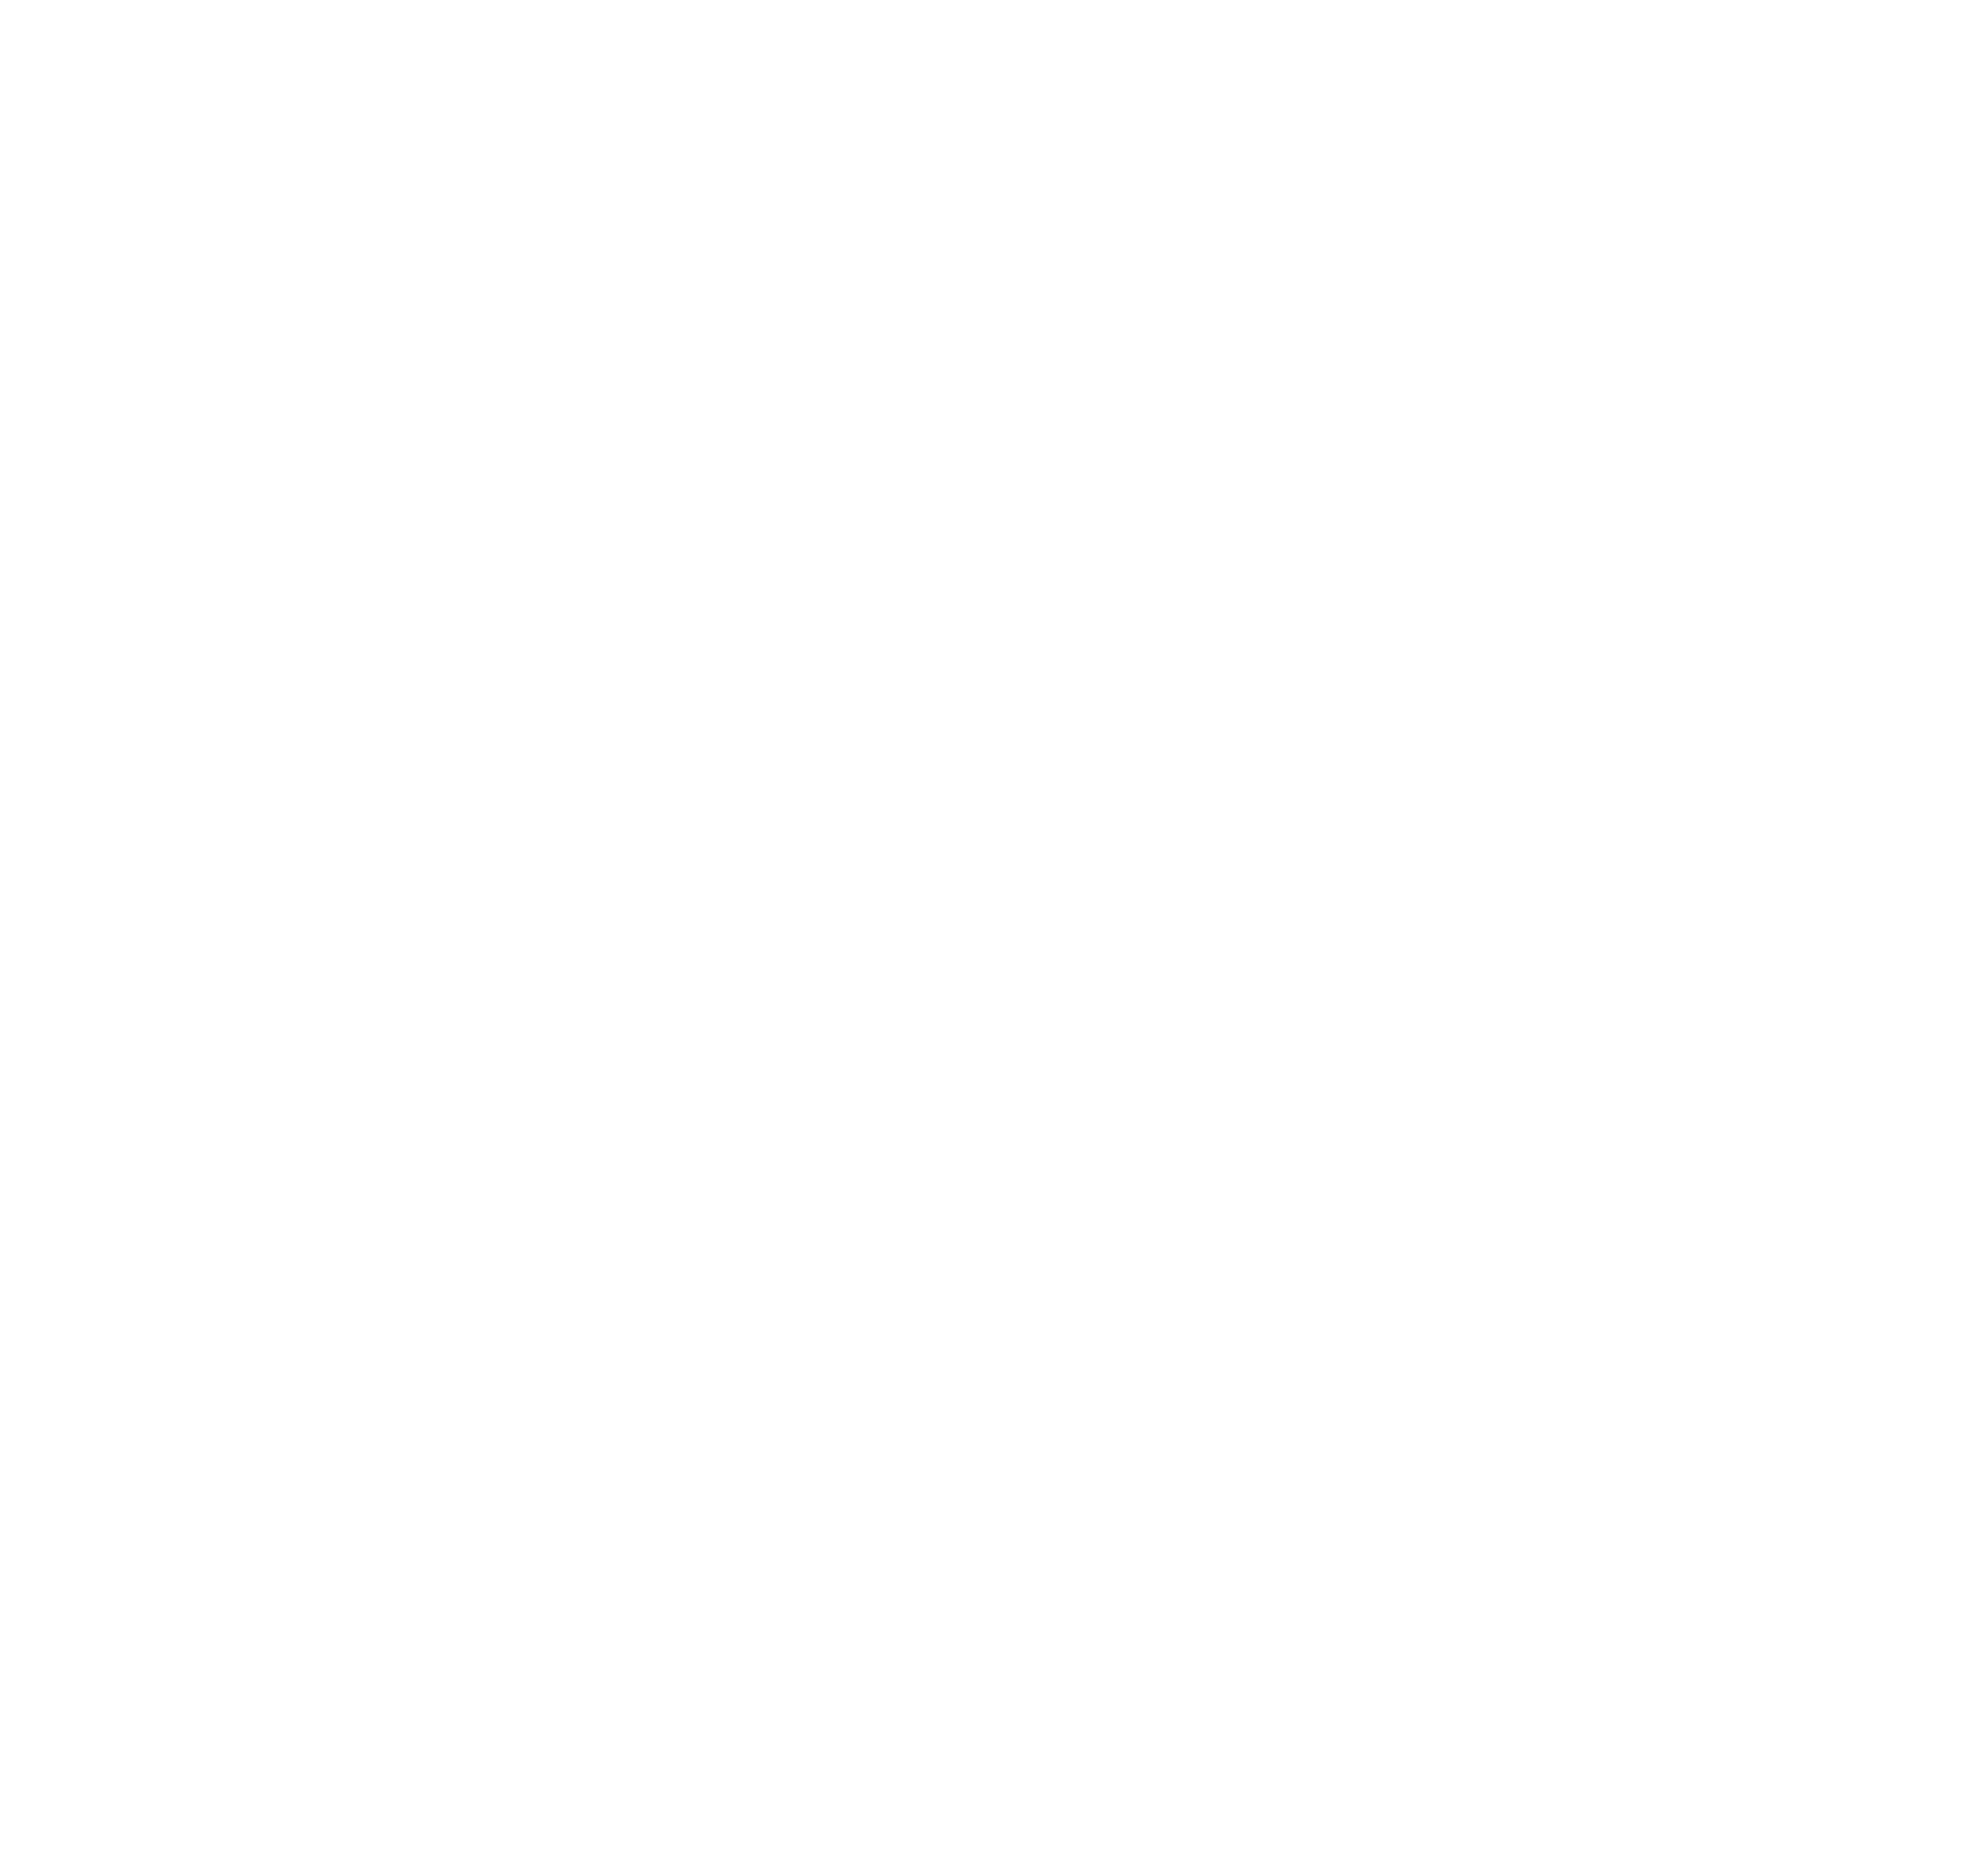 Neri